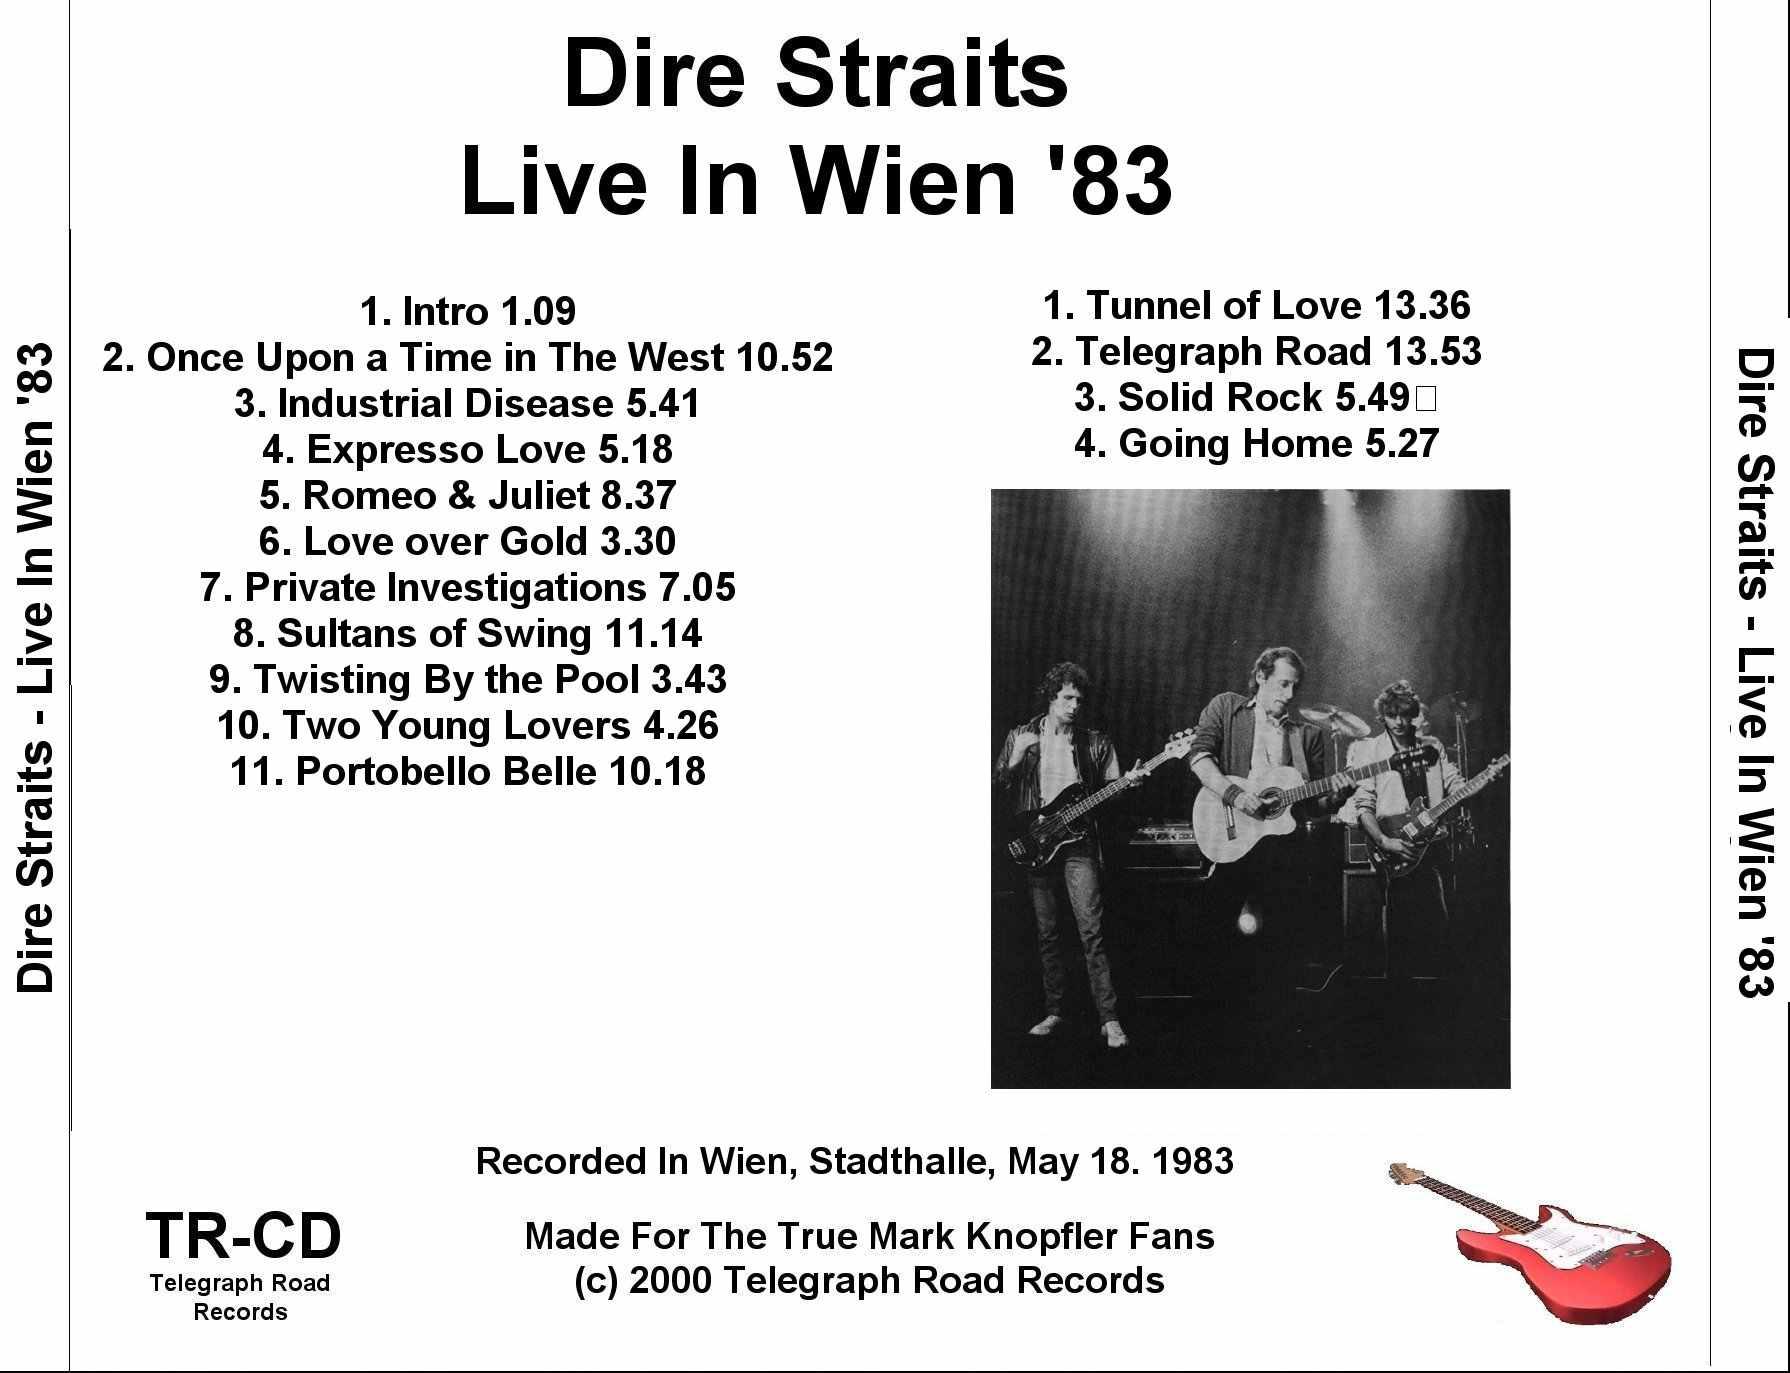 DireStraits1983-05-18StadthalleViennaSwitzerland.jpg